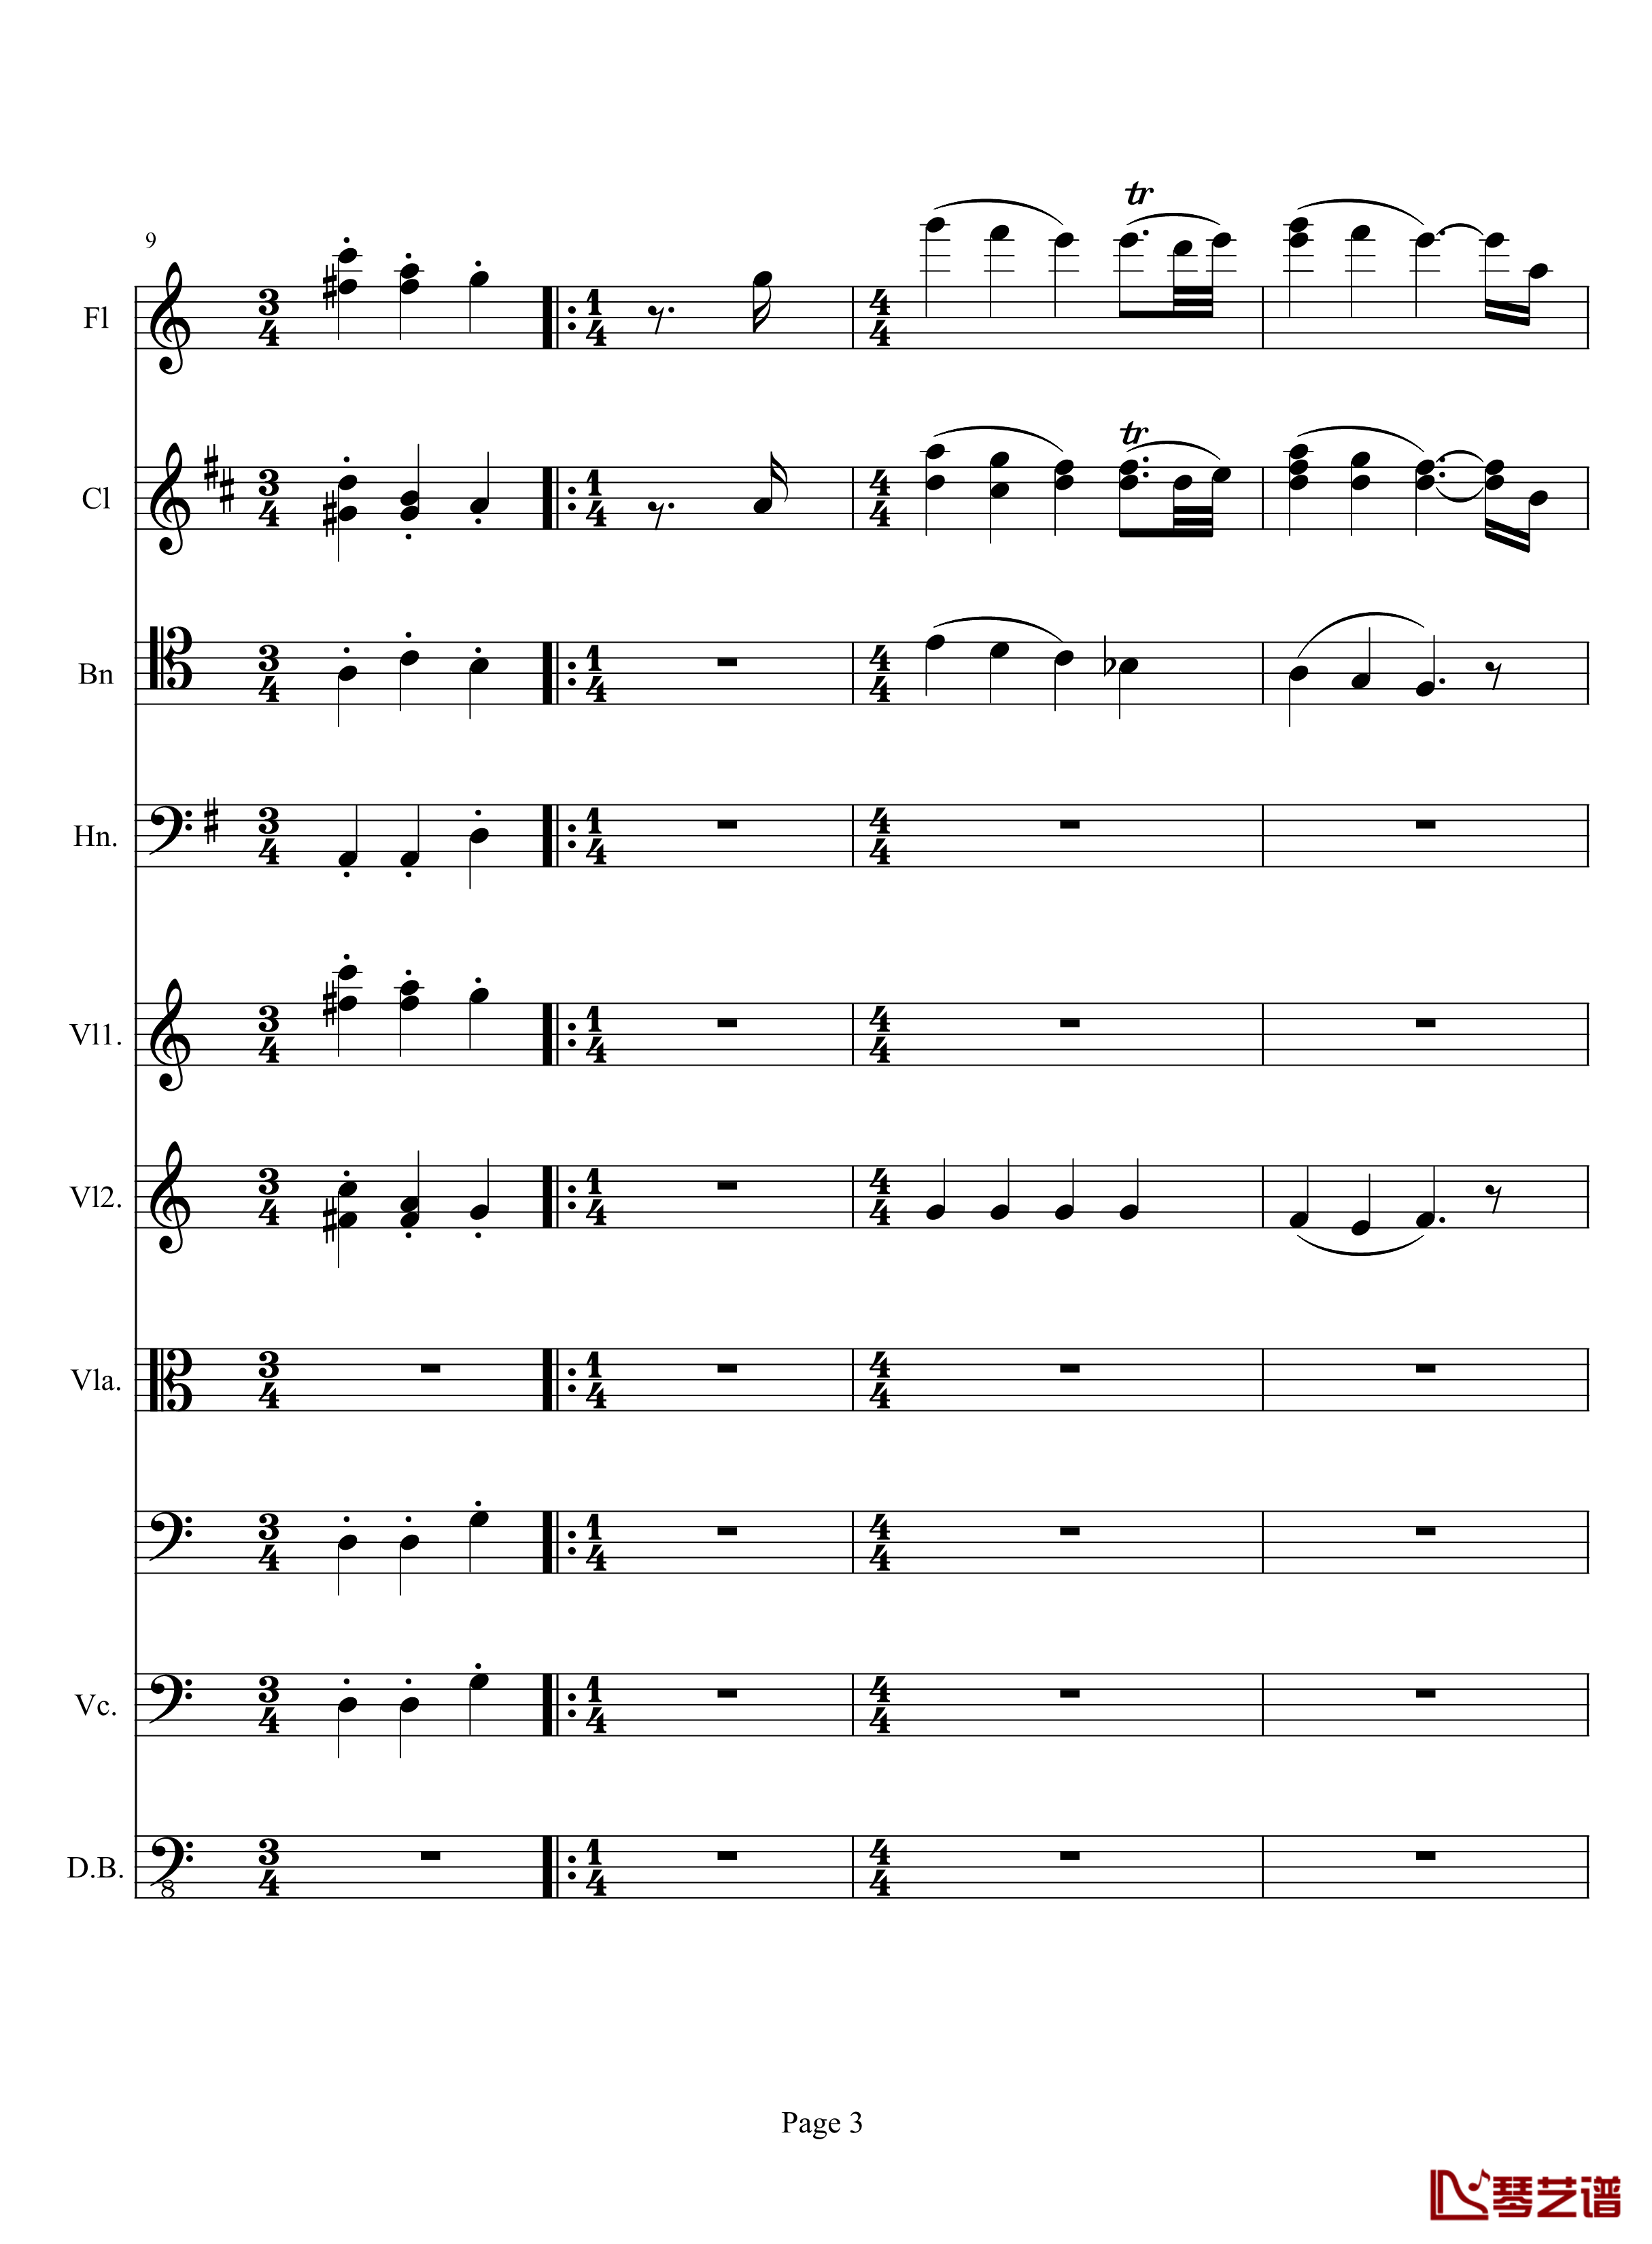 奏鸣曲之交响钢琴谱-第10首-2-贝多芬-beethoven3